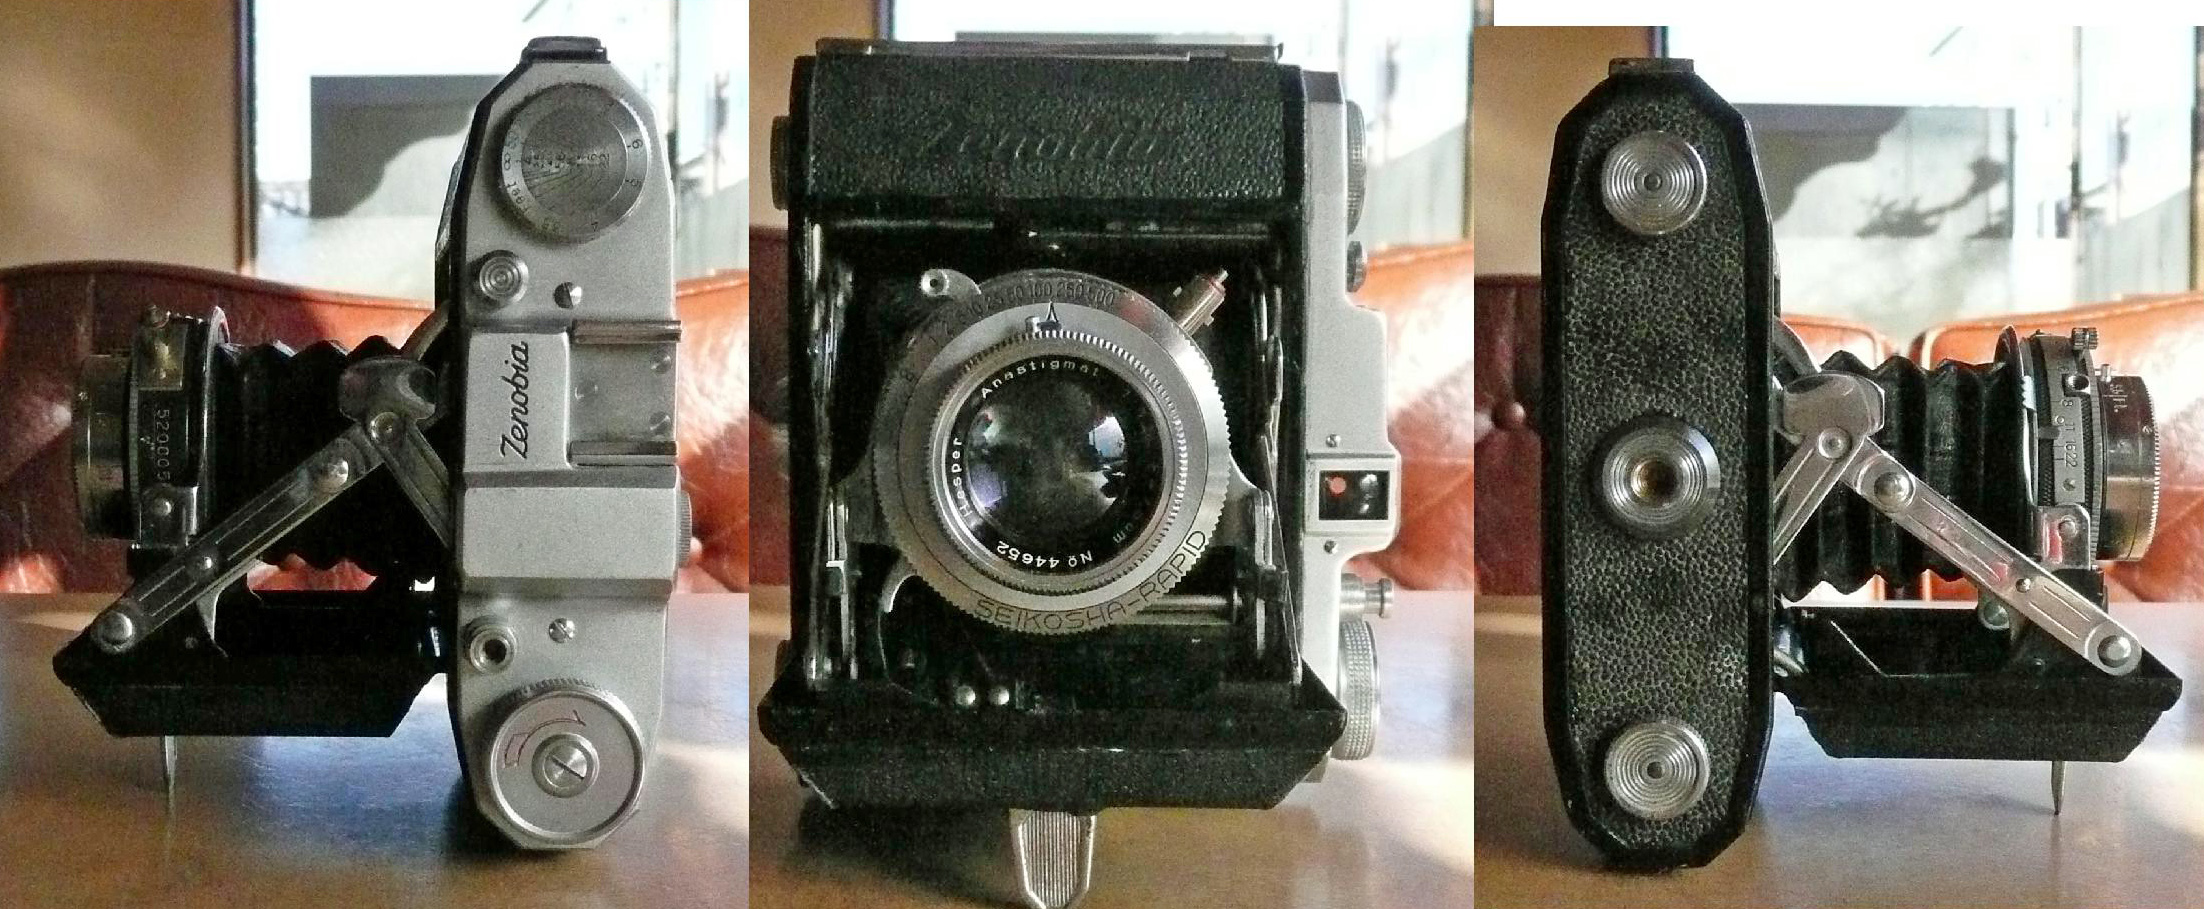 〇 今日の一献 セミサイズ蛇腹カメラ 第一光学のゼノビアC-Ⅱ型